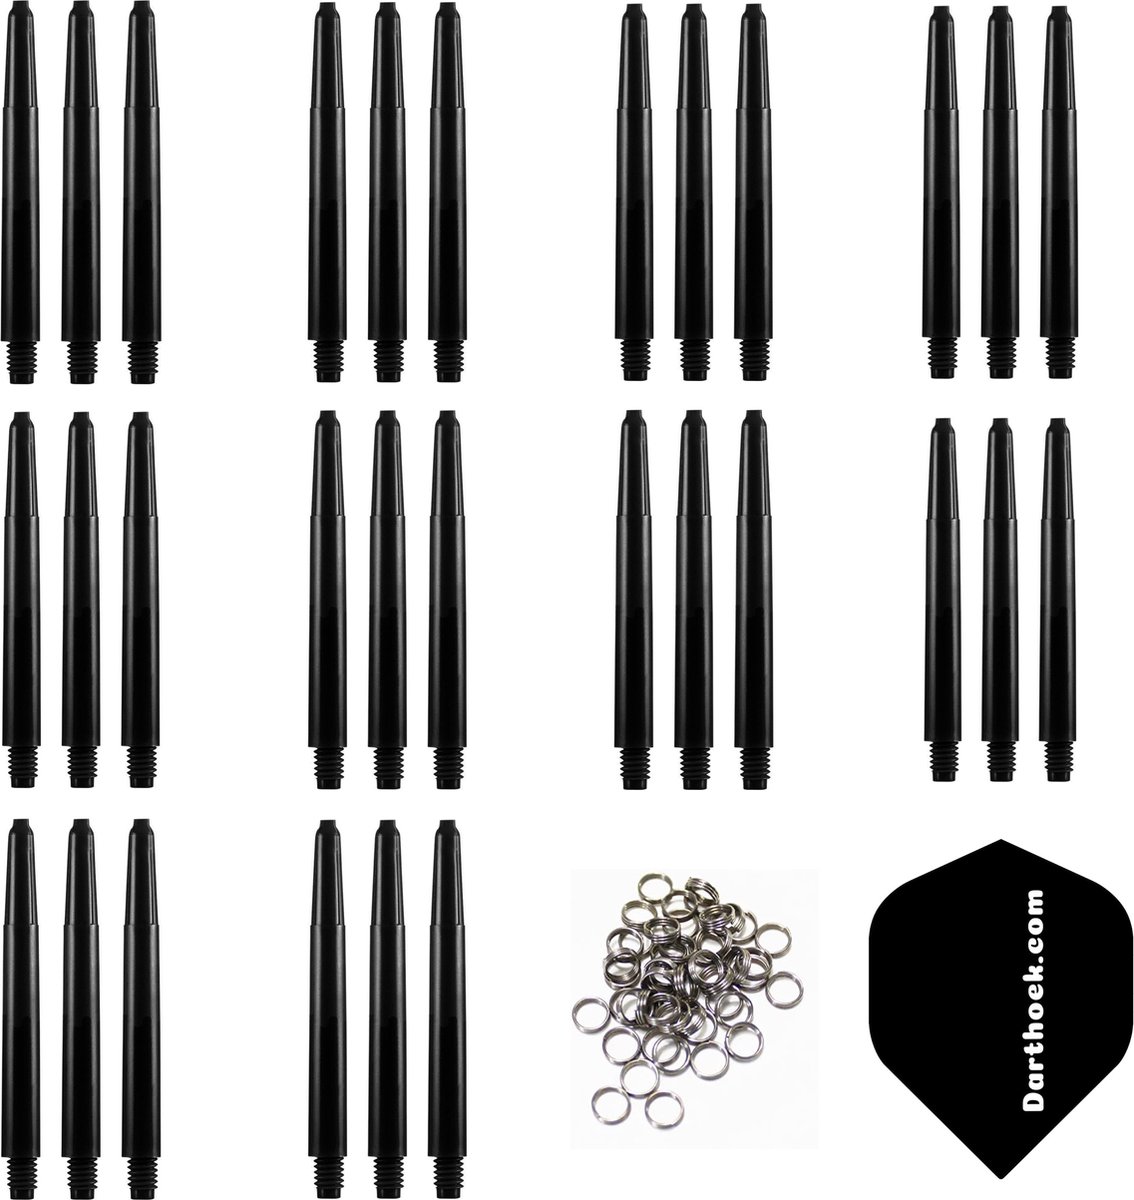 Darthoek zwarte dart shafts| 10 sets (30 stuks) |Extra Short | + 10 sets (30 stuks) veerringen + 1 set darthoek flights